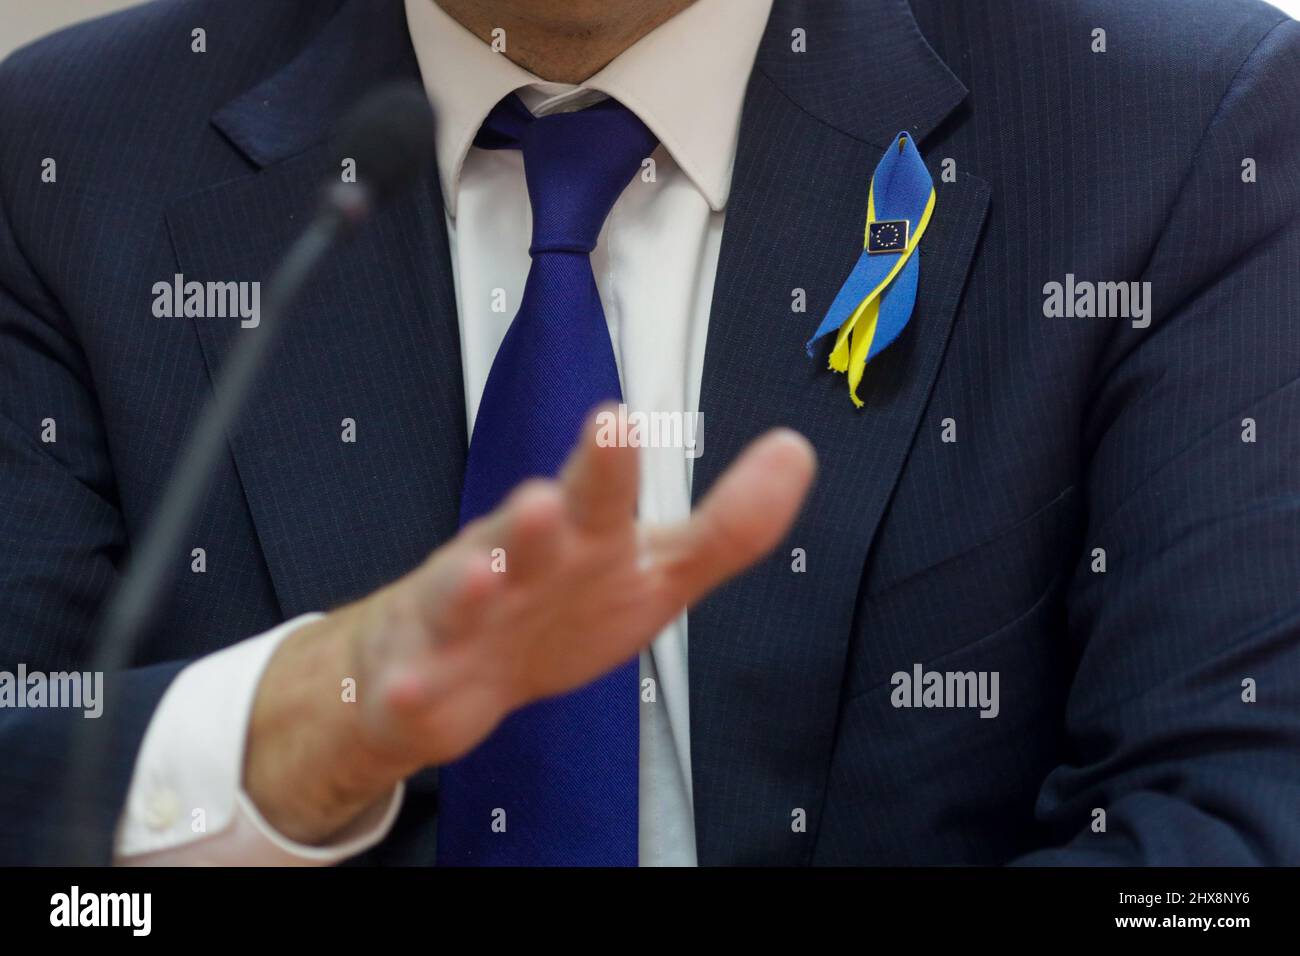 Ciolpani, Rumania - 10 de marzo de 2022: Detalles con un alto funcionario de la Comisión Europea que lleva un pin de la Comisión Europea y una cinta de la bandera de Ucrania - Foto de stock